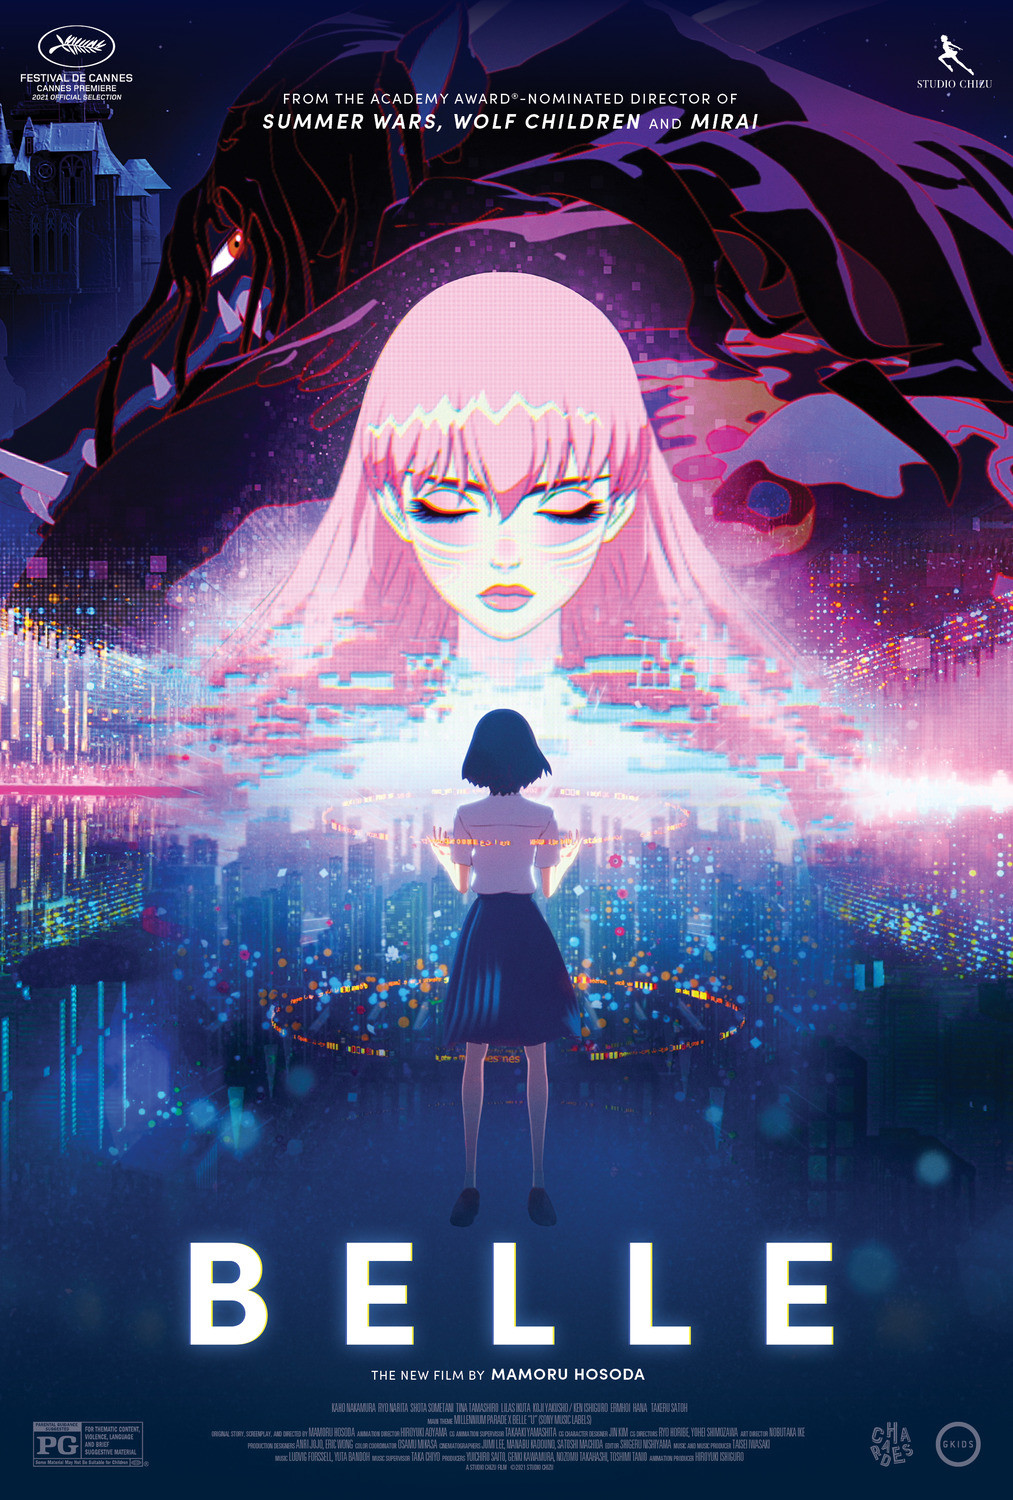 BELLE – Filme já é o maior sucesso do diretor Mamoru Hosoda - Manga Livre RS